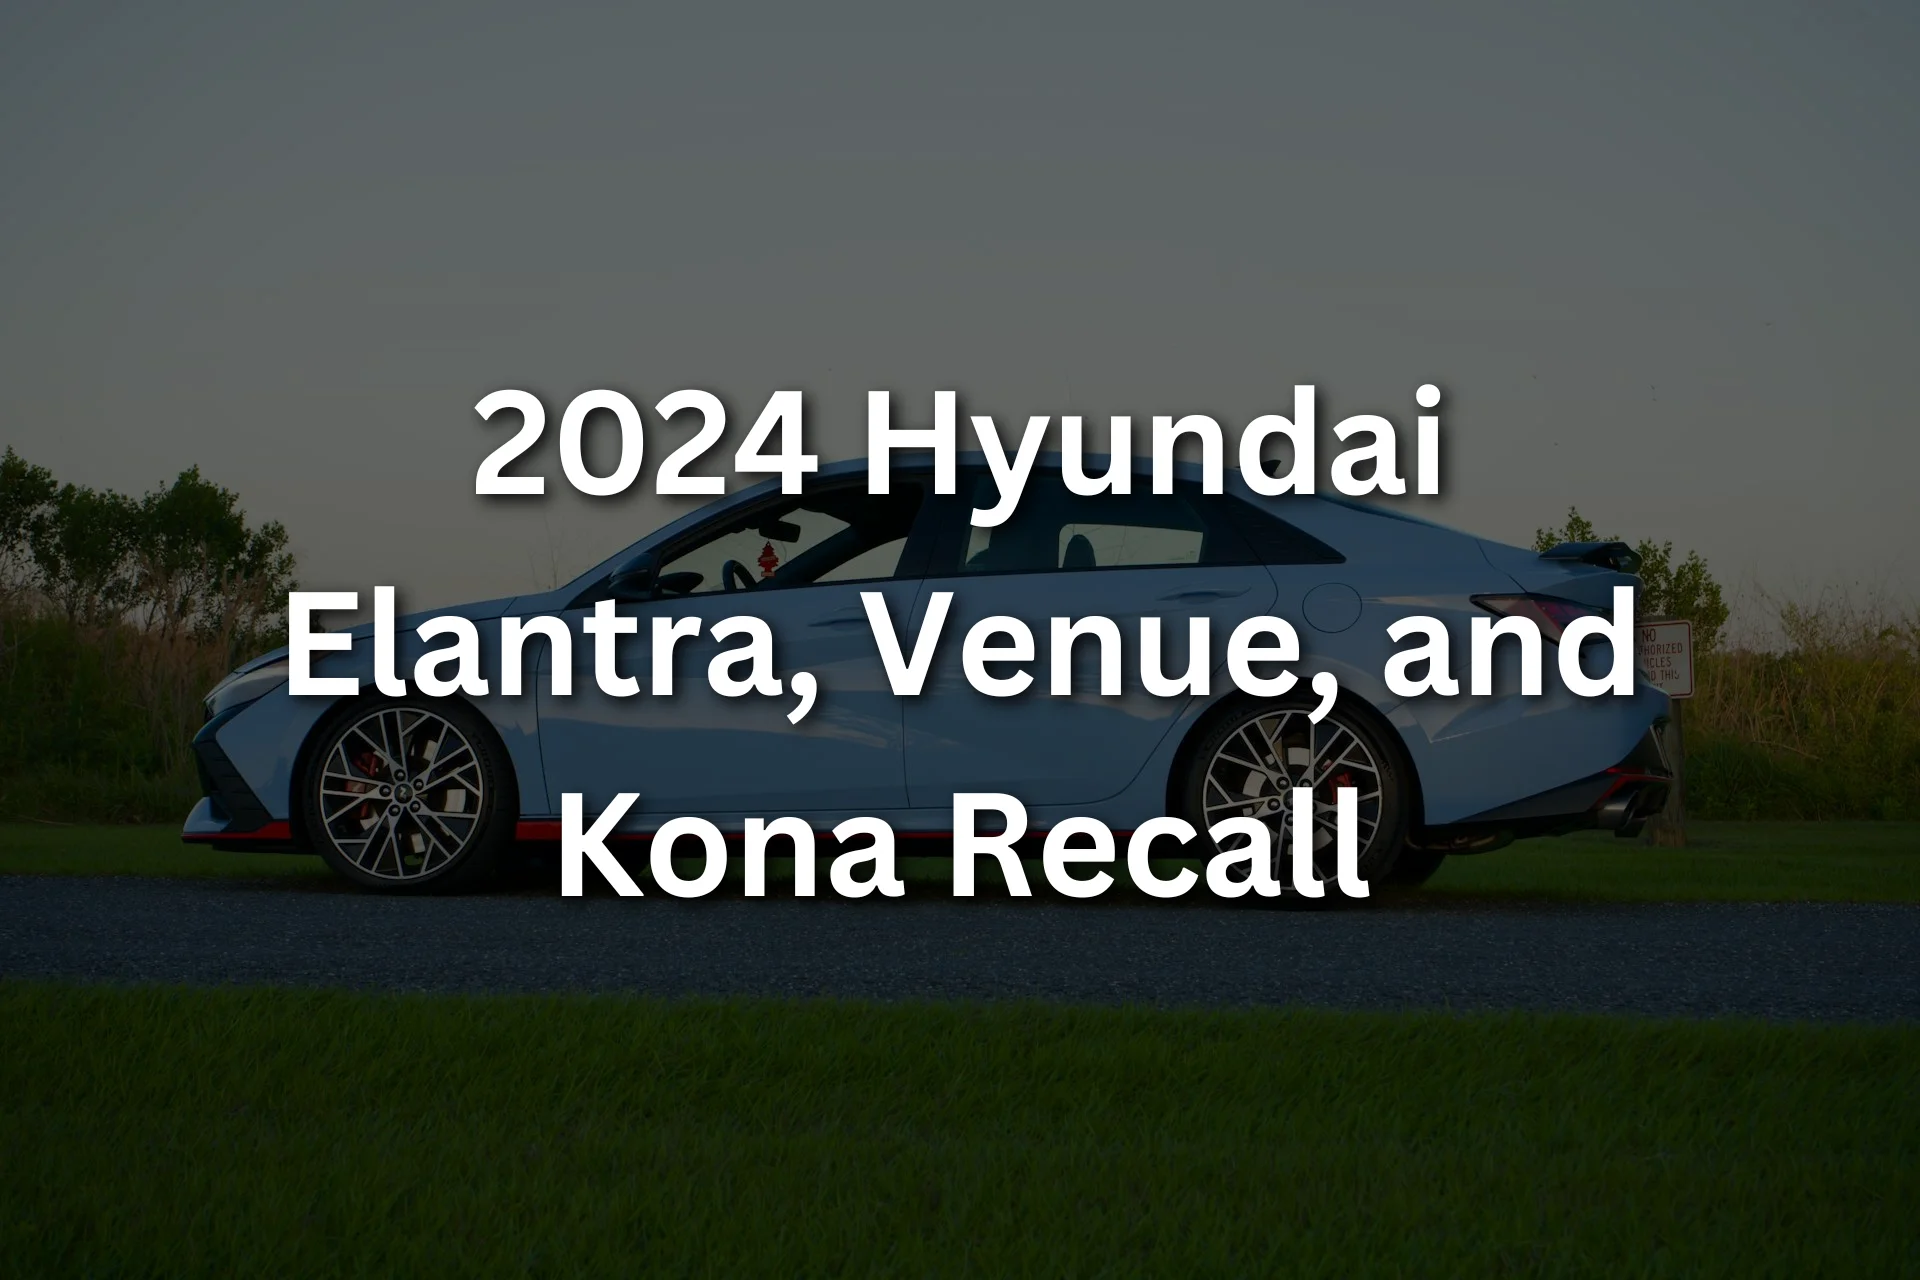 2024 Hyundai Elantra, Venue, and Kona Recall